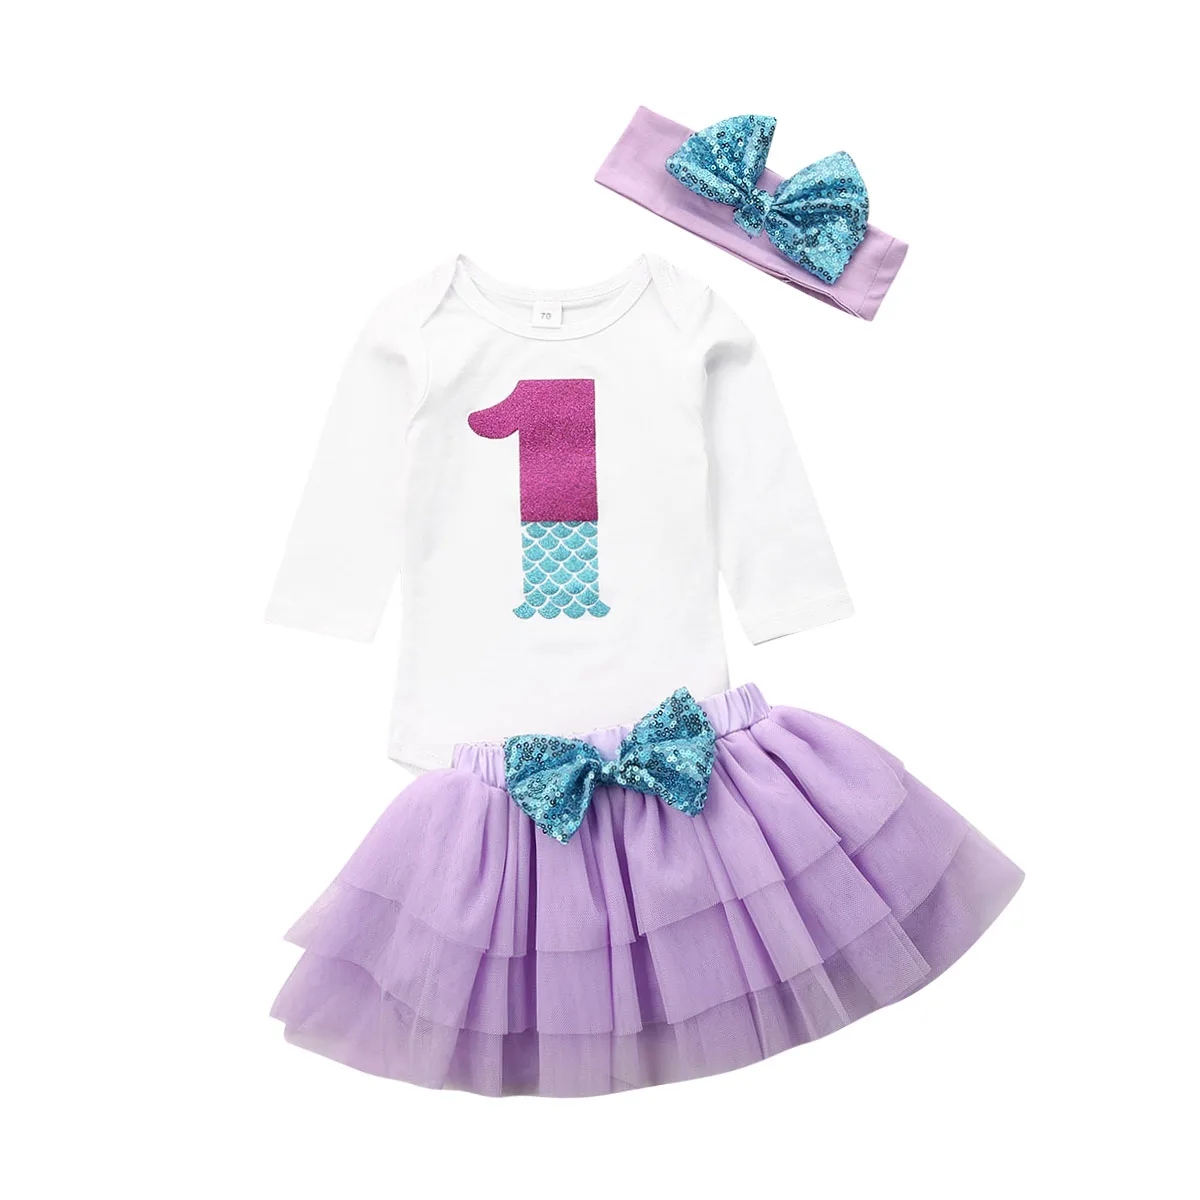 Первый комбинезон на день рождения для новорожденных девочек, платье с юбкой-пачкой милые вечерние наряды принцессы вечерние комплекты одежды для малышей